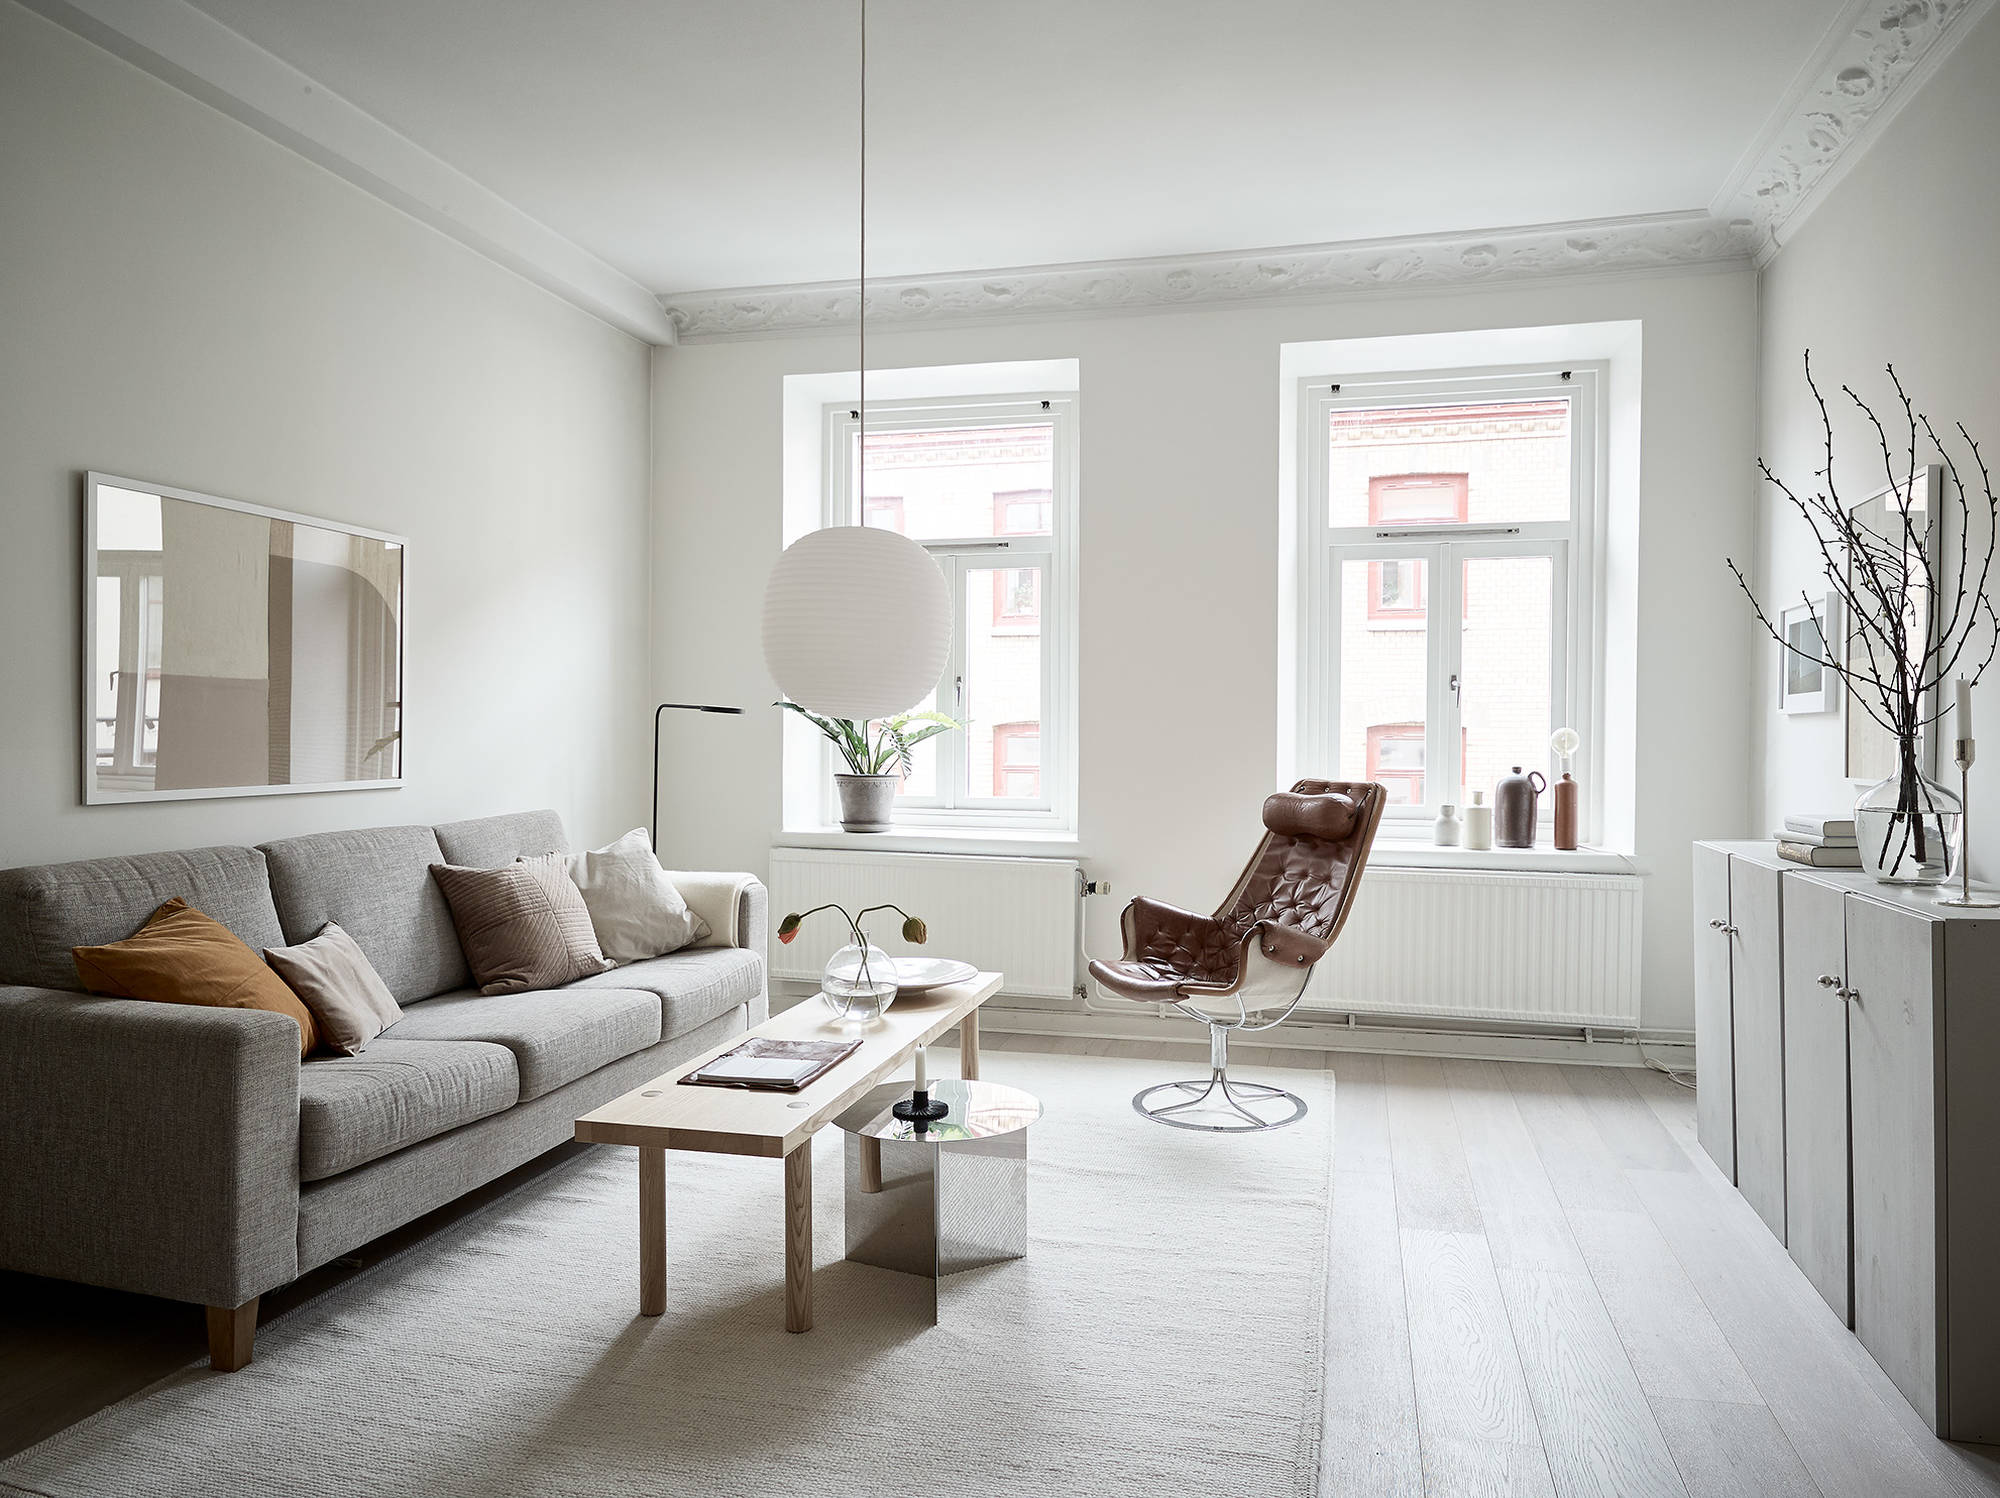 delikatissen piso sueco muebles ikea interiores pequeños estilo escandinavo decoración nórdica decoración marrón decoración blanco 